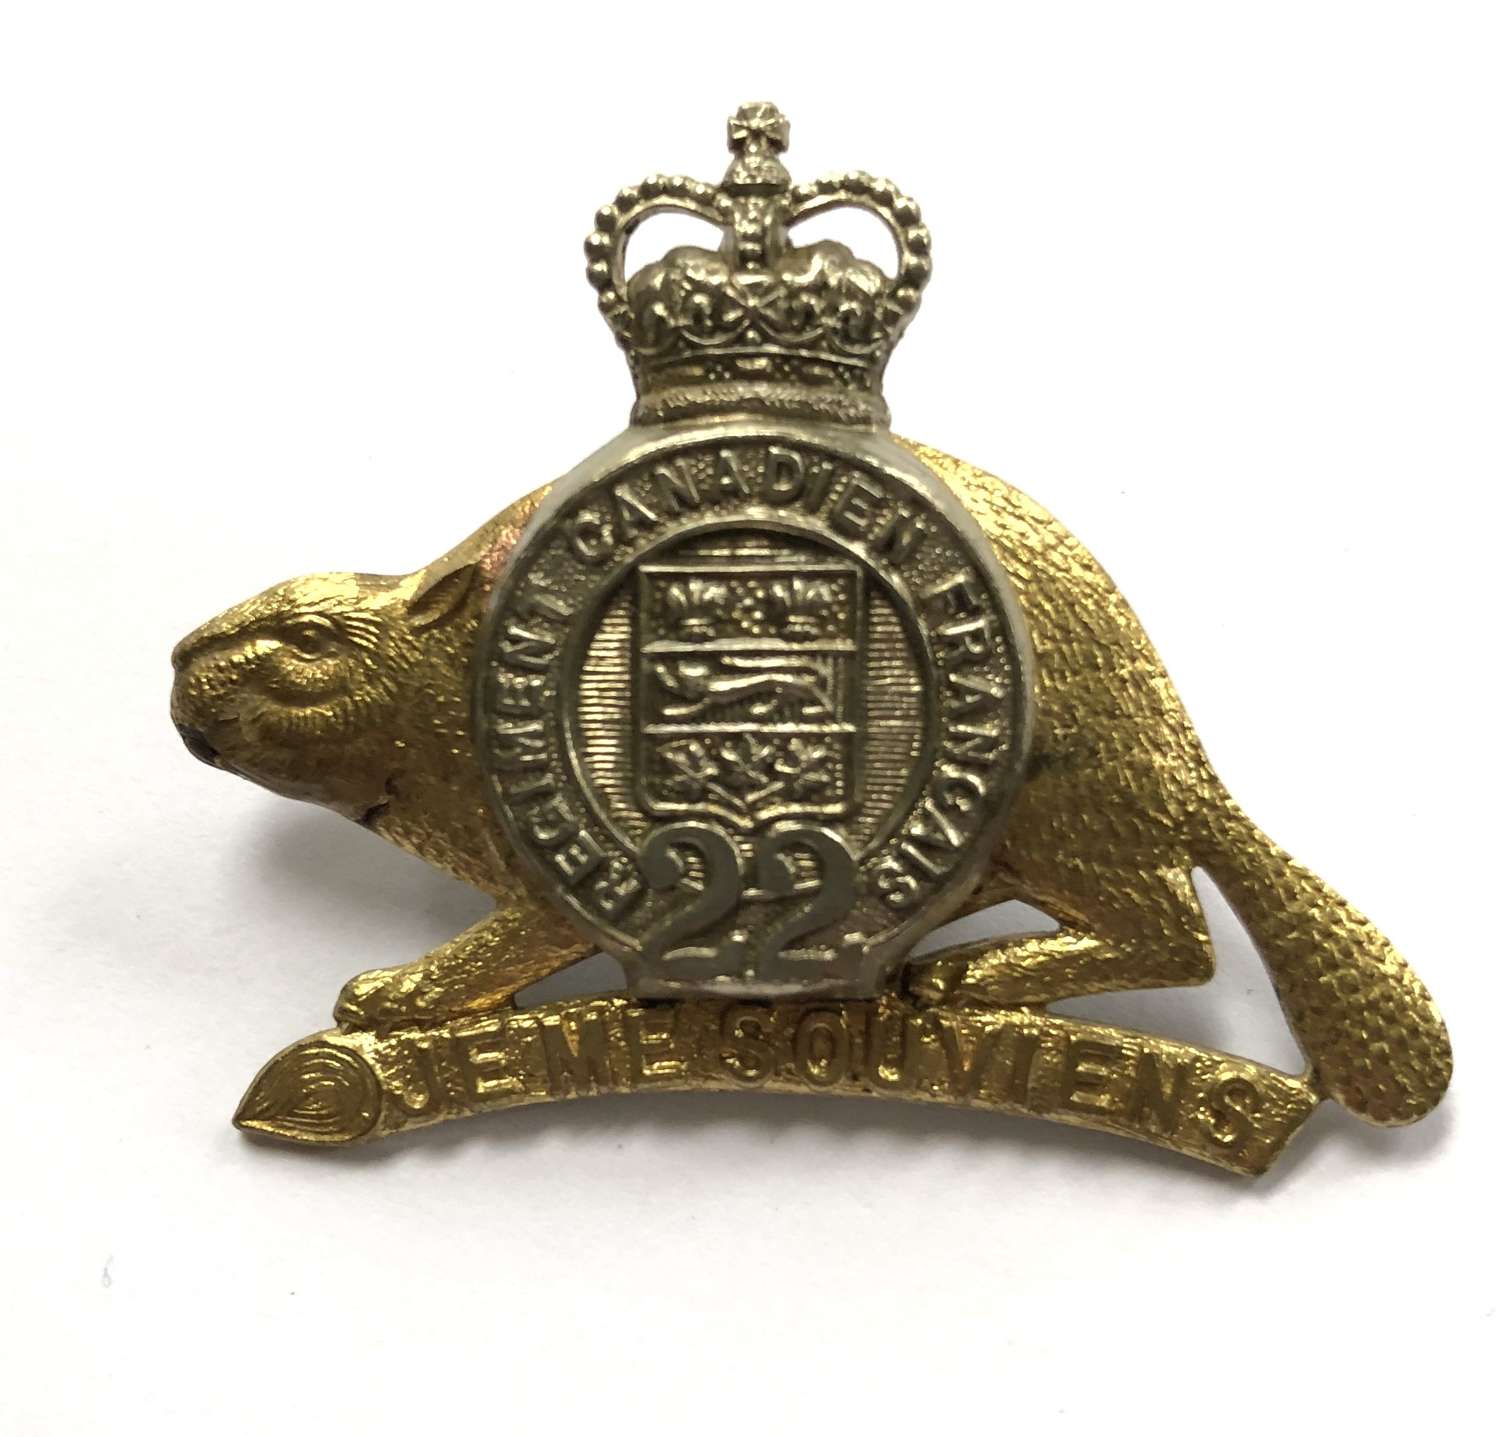 Canada. Royal 22nd Regiment post 1953 cap badge